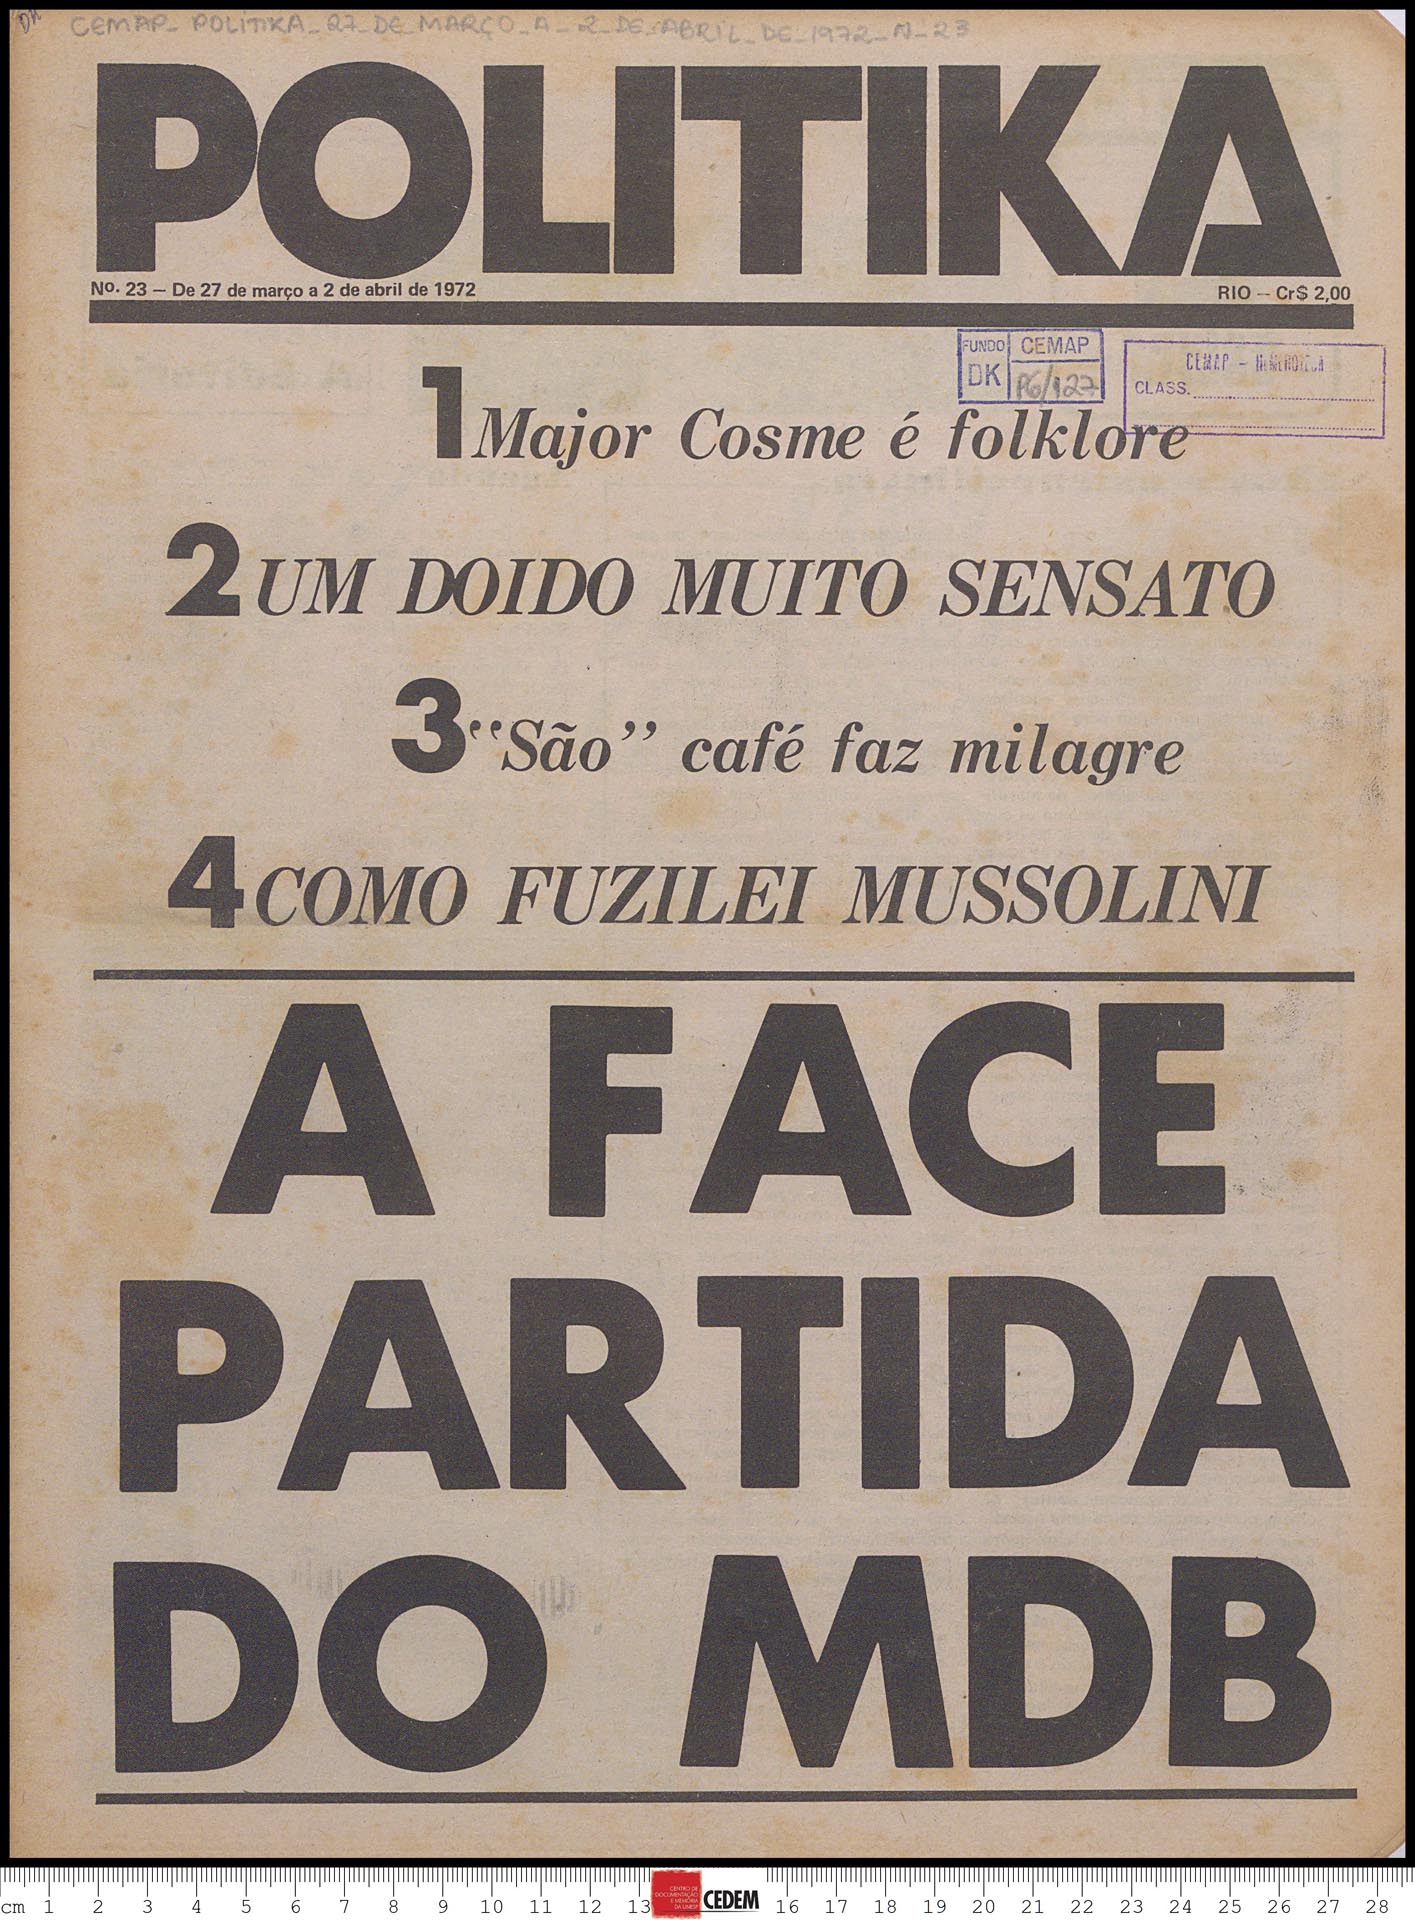 Politika - 23 - 27 de mar. a 2 de abr. 1972